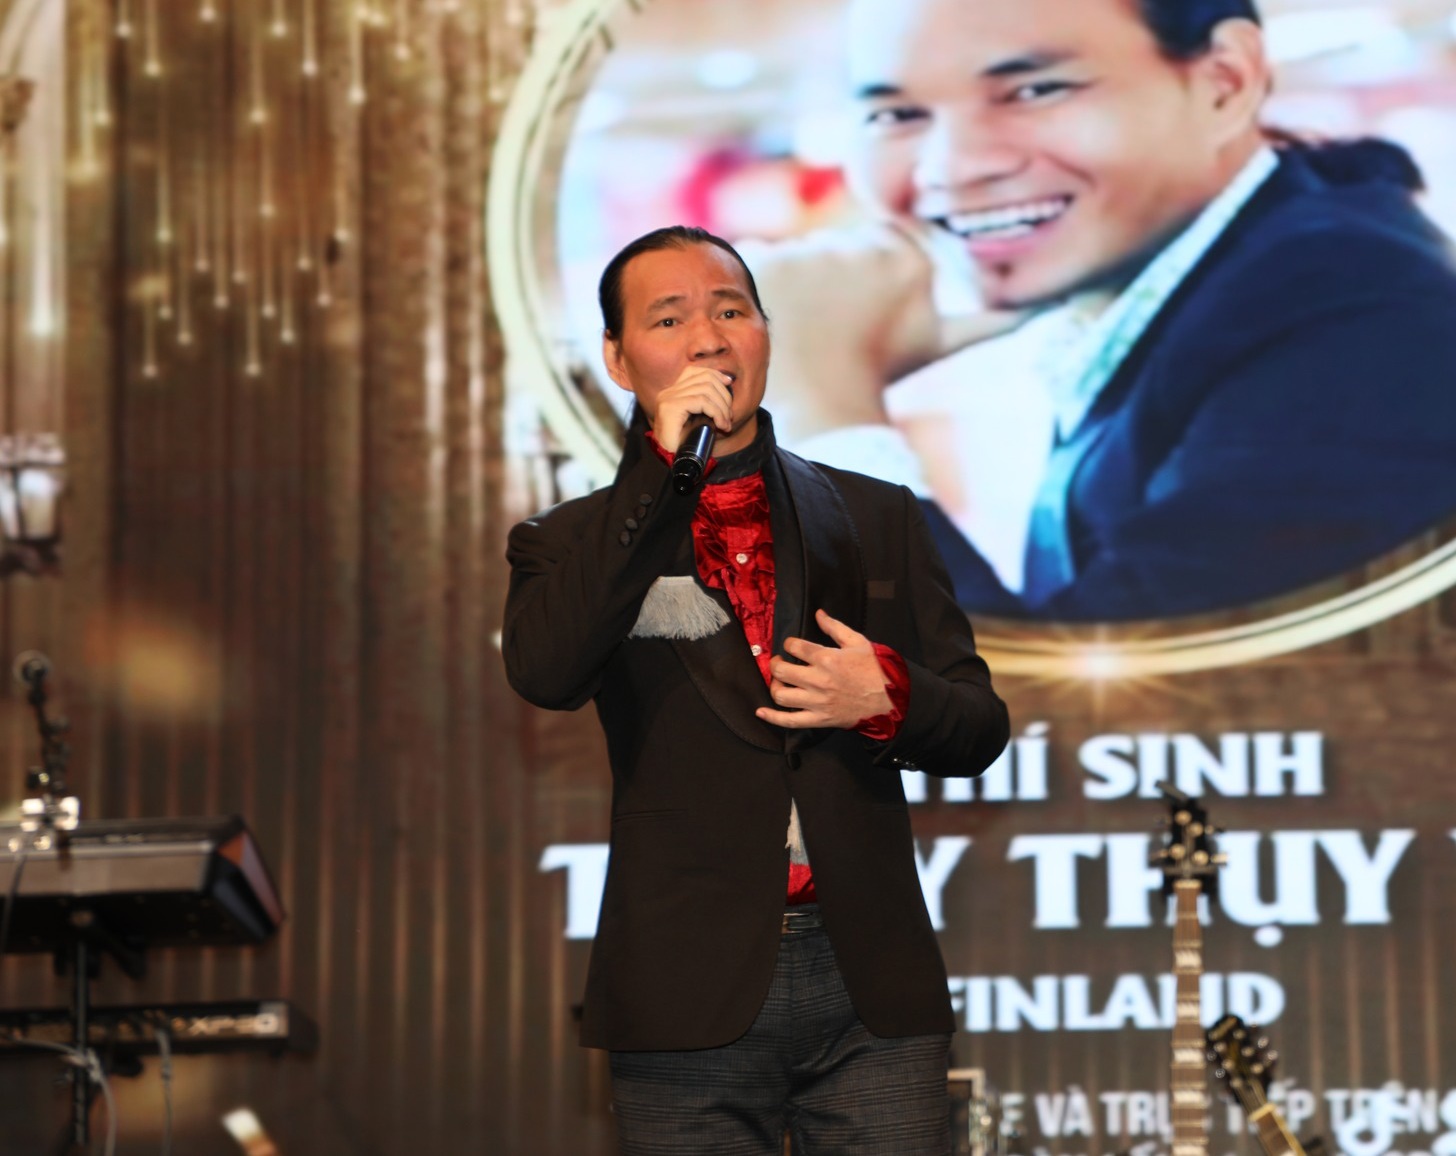 Sau 14 năm rời nhóm nhạc đình đám, nam ca sĩ Việt bất ngờ giành giải nhất cuộc thi hát tại Châu Âu - ảnh 3